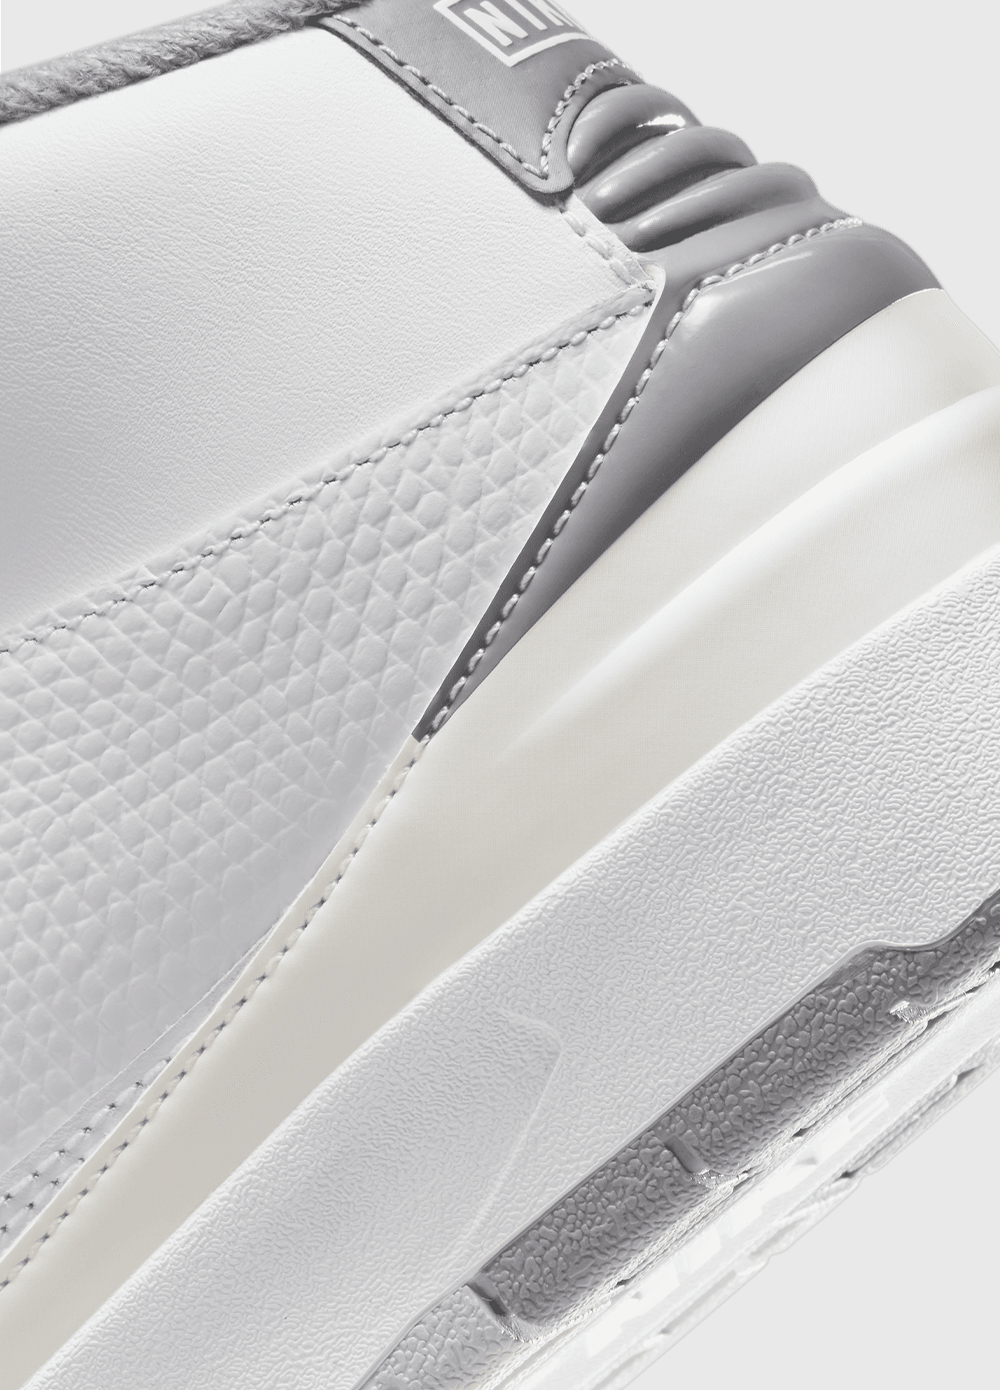 Air Jordan 2 Retro 'Cement Grey' Sneakers (PS)